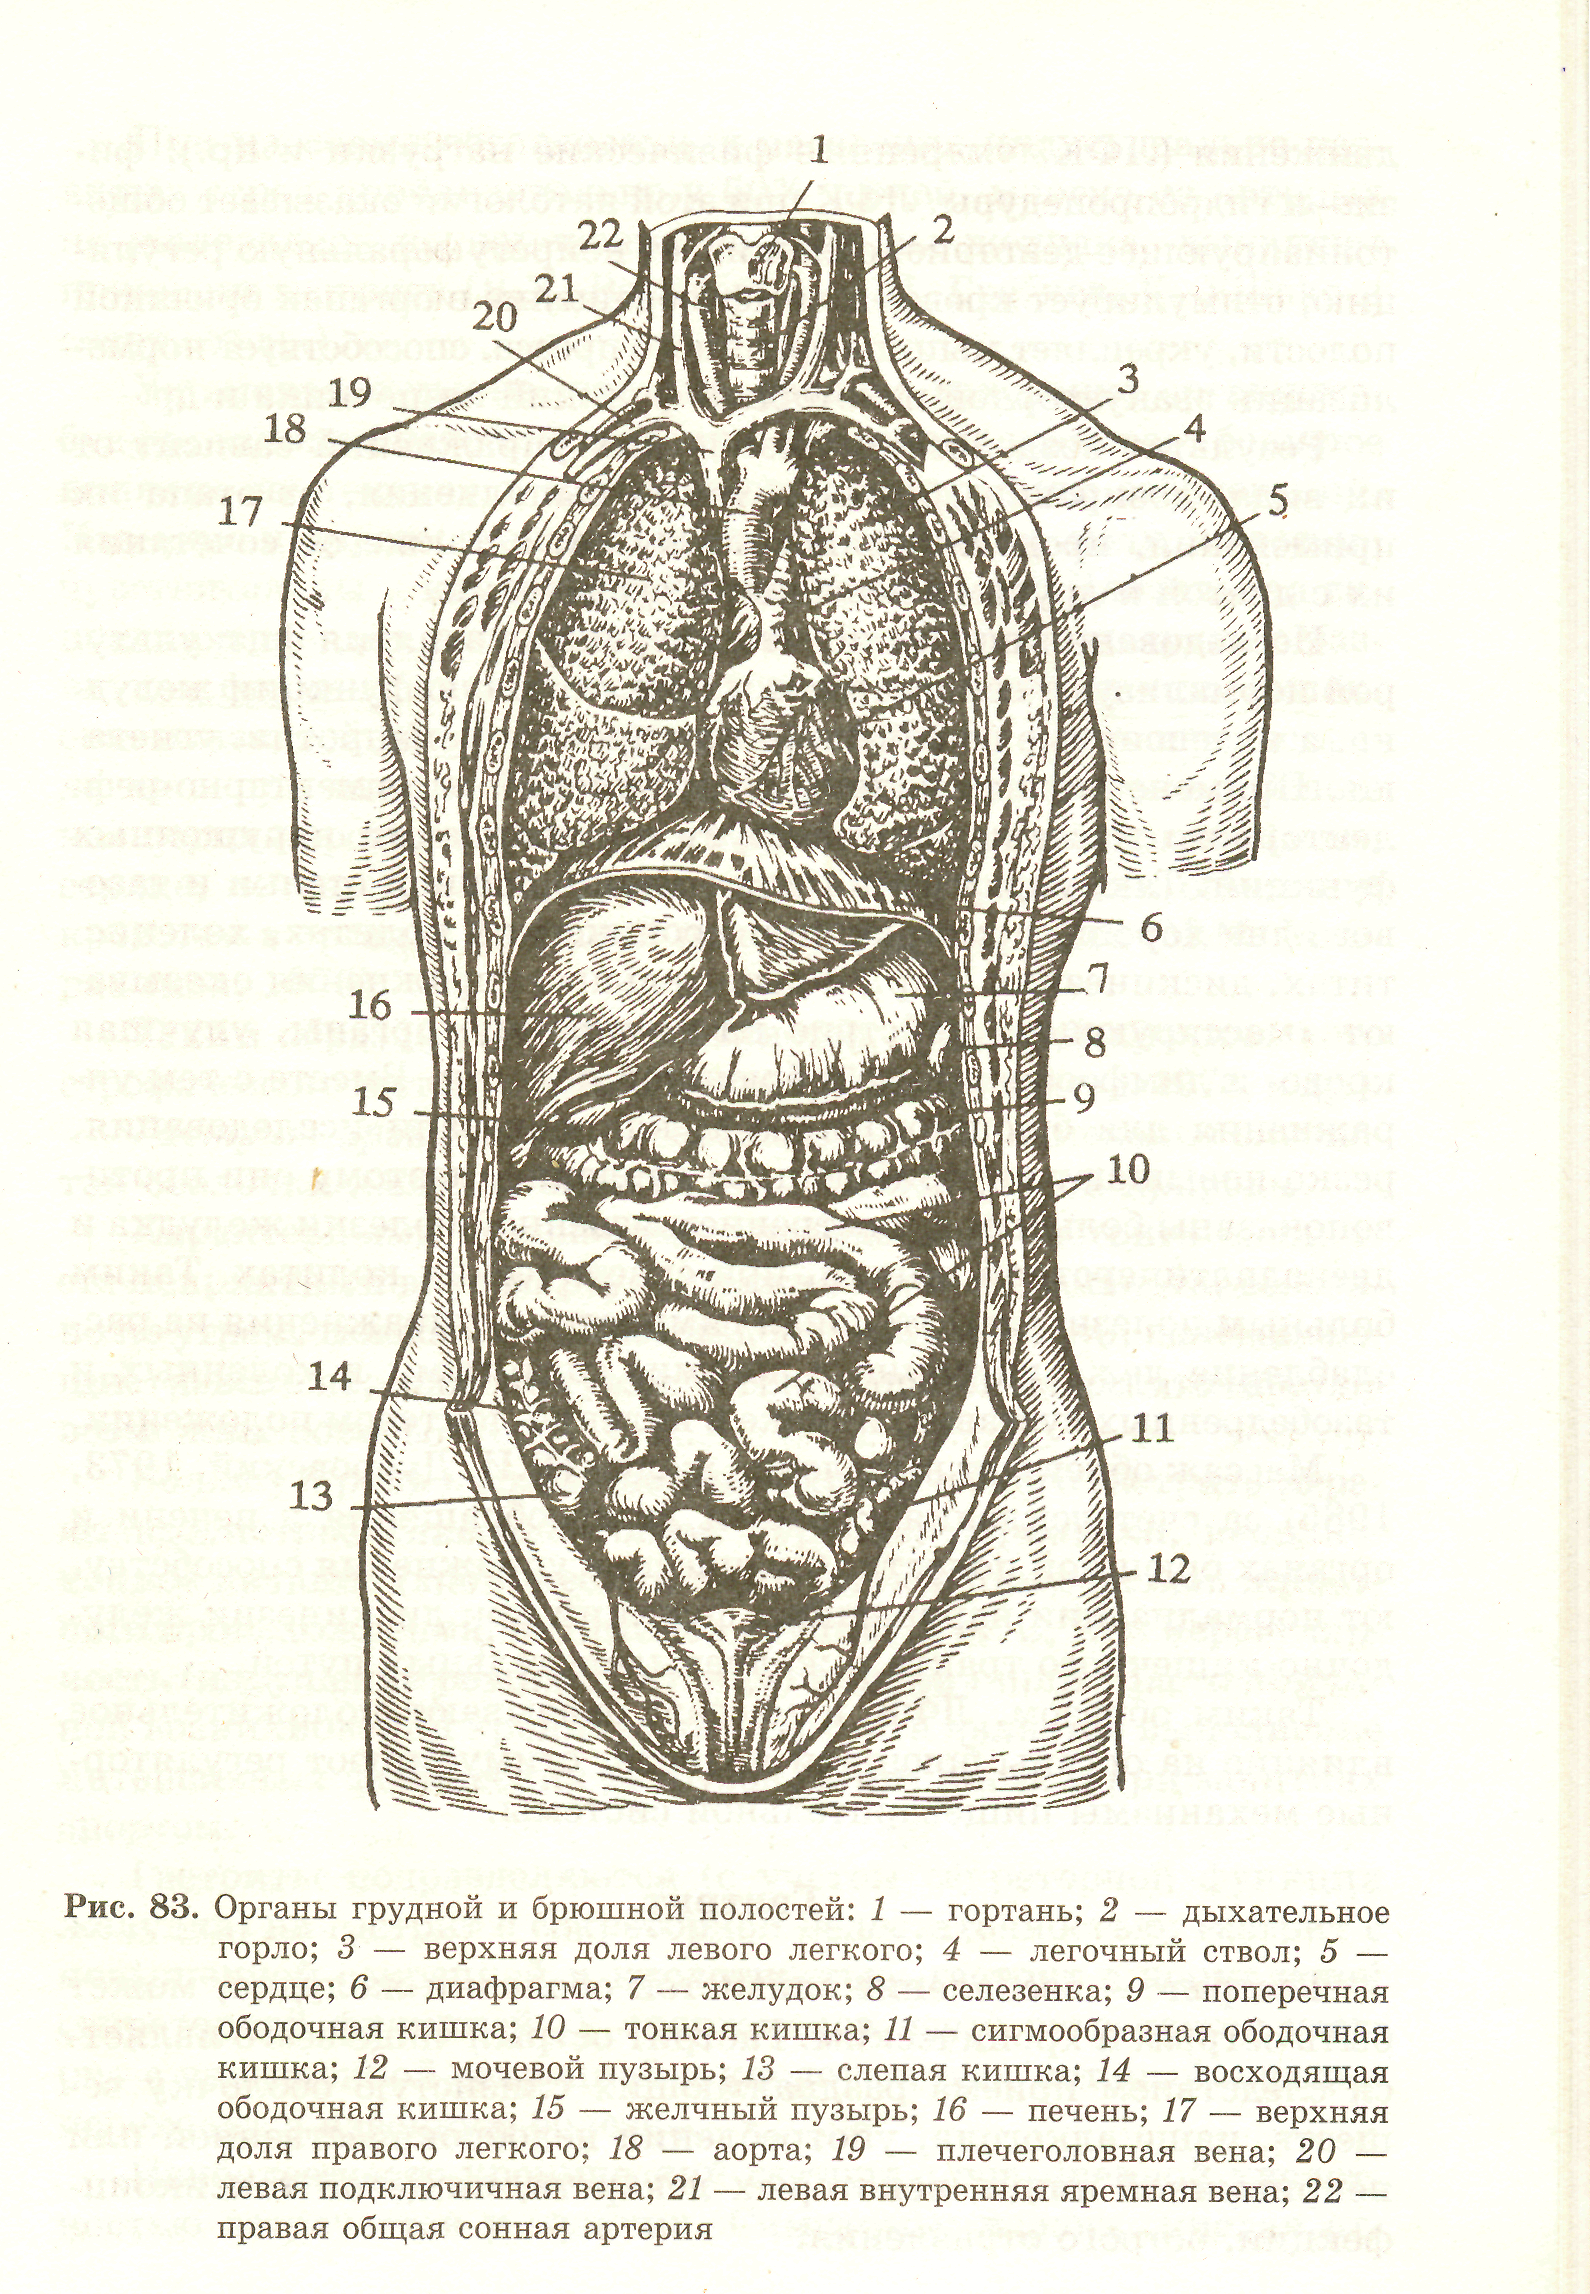 Орган отделяющий грудную полость от брюшной. Анатомическая схема брюшной полости.